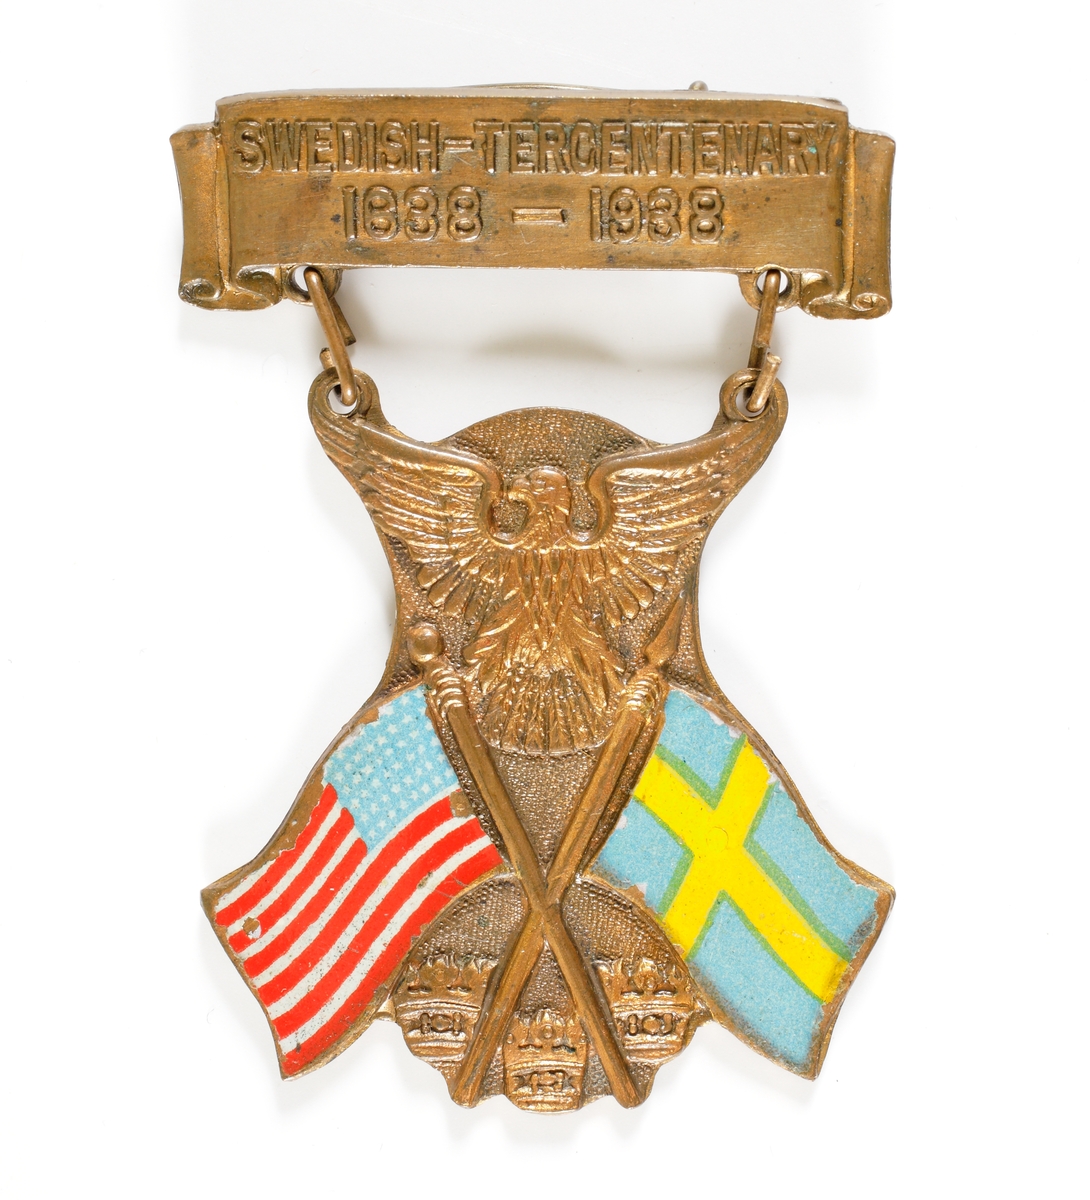 Nålmärke bestående av en överdel försedd med texten "SWEDISH-TERCENTENARY 1638-1938", samt en underdel som är sammanlänkad med två öglor. Den undre delen består av två korslagda fanor, den amerikanska och den svenska, samt upptill den amerikanska nationalörnen och nedtill de tre svenska kronorna.